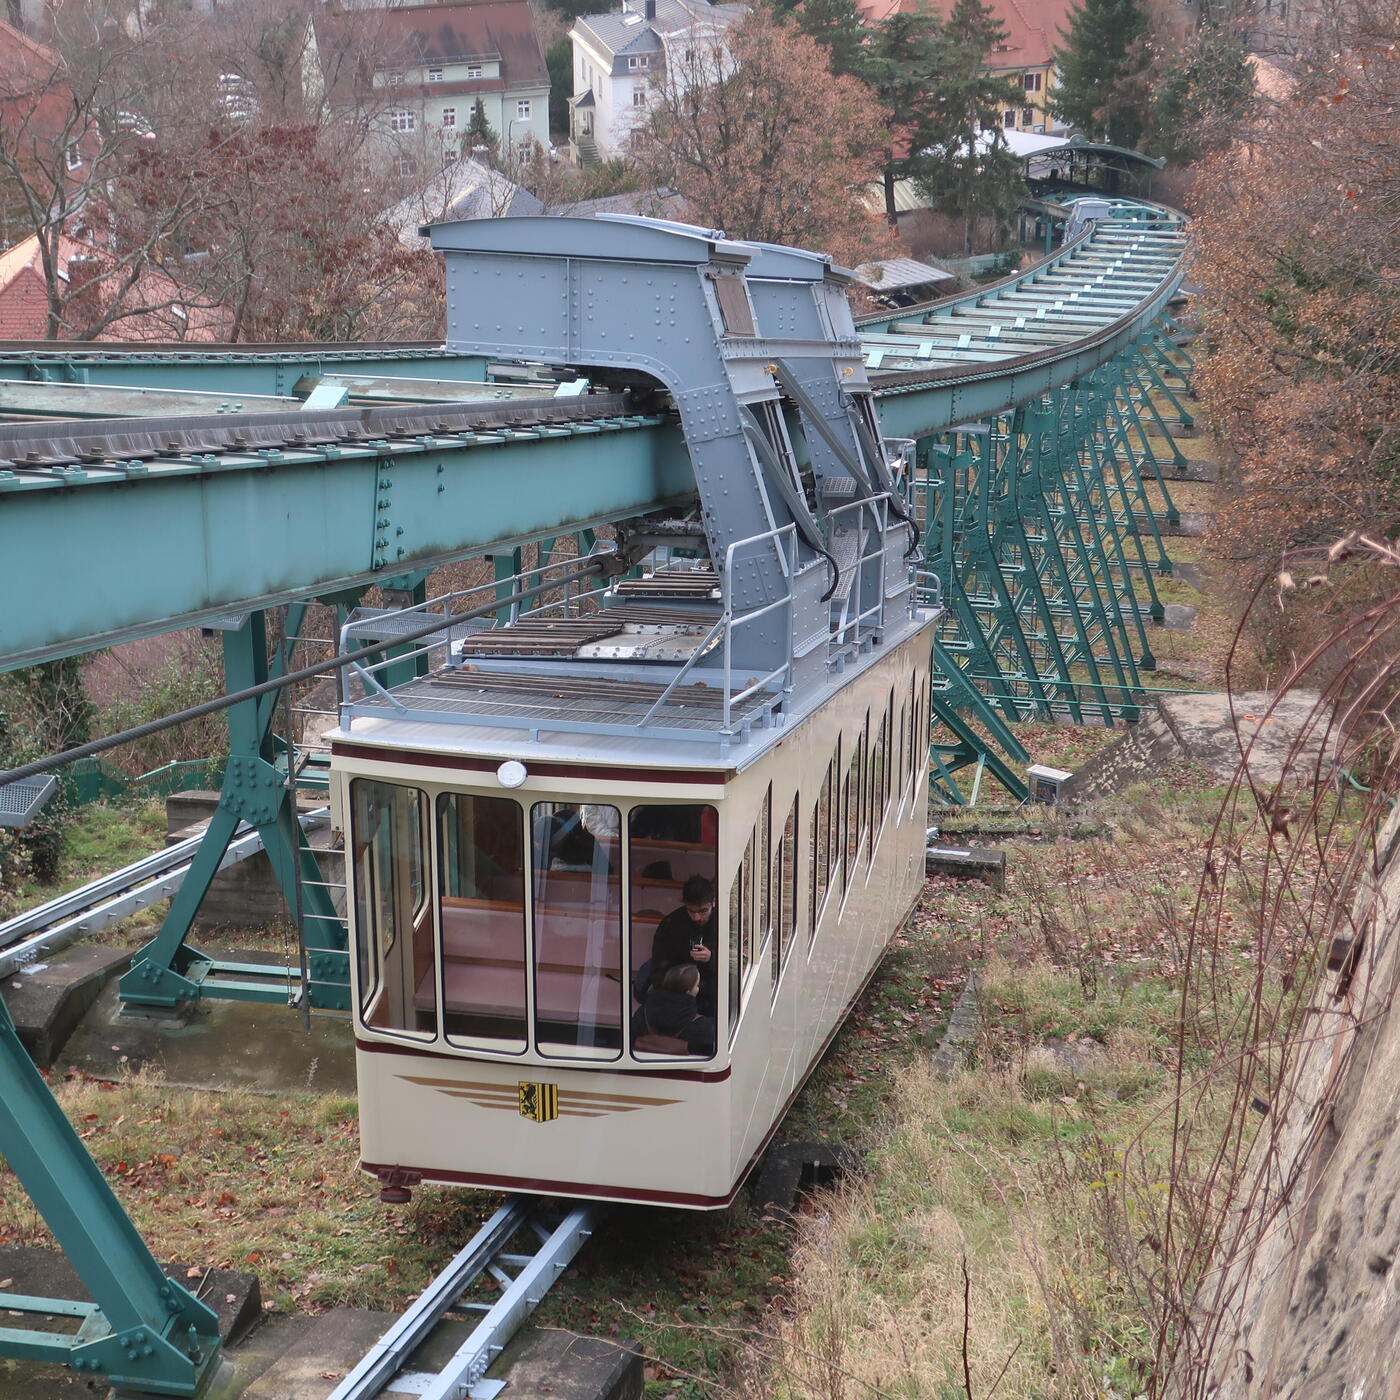 【ドイツ】ドレスデンで訪れたい歴史あるモノレール / ドレスデン・サスペンション鉄道